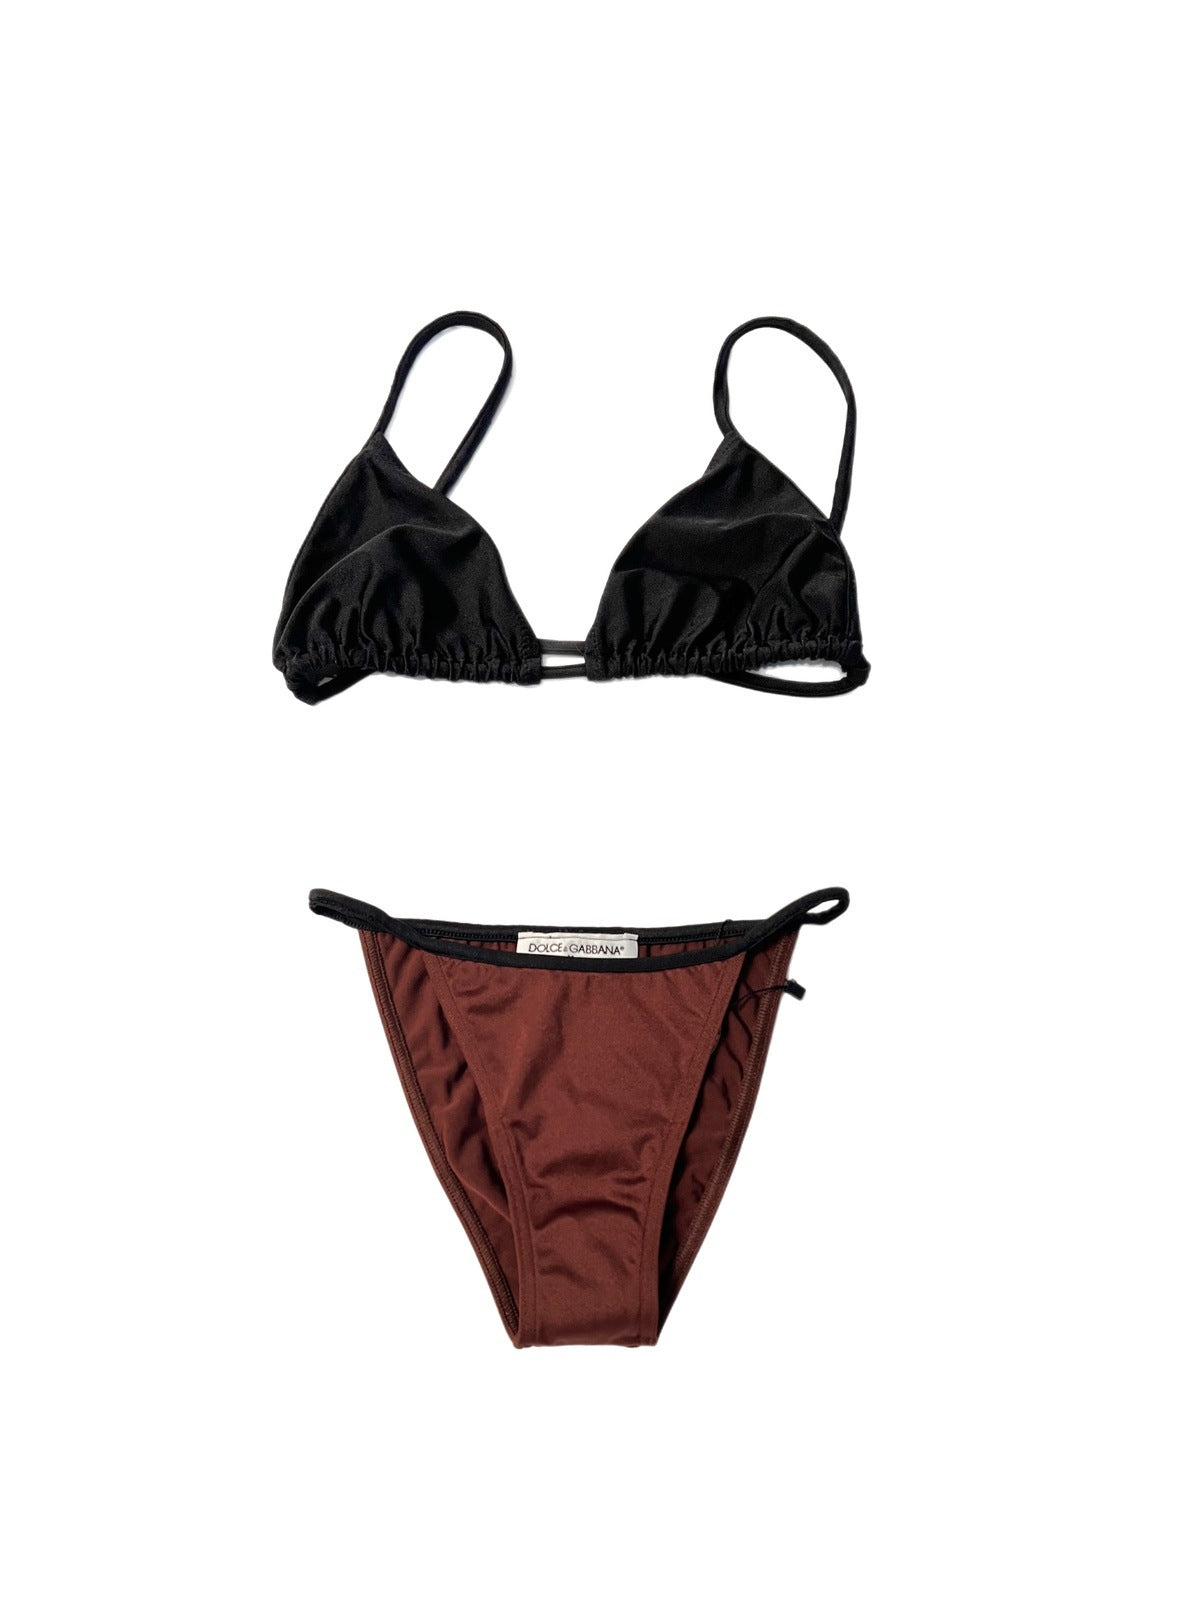 D&G brown / black bikini